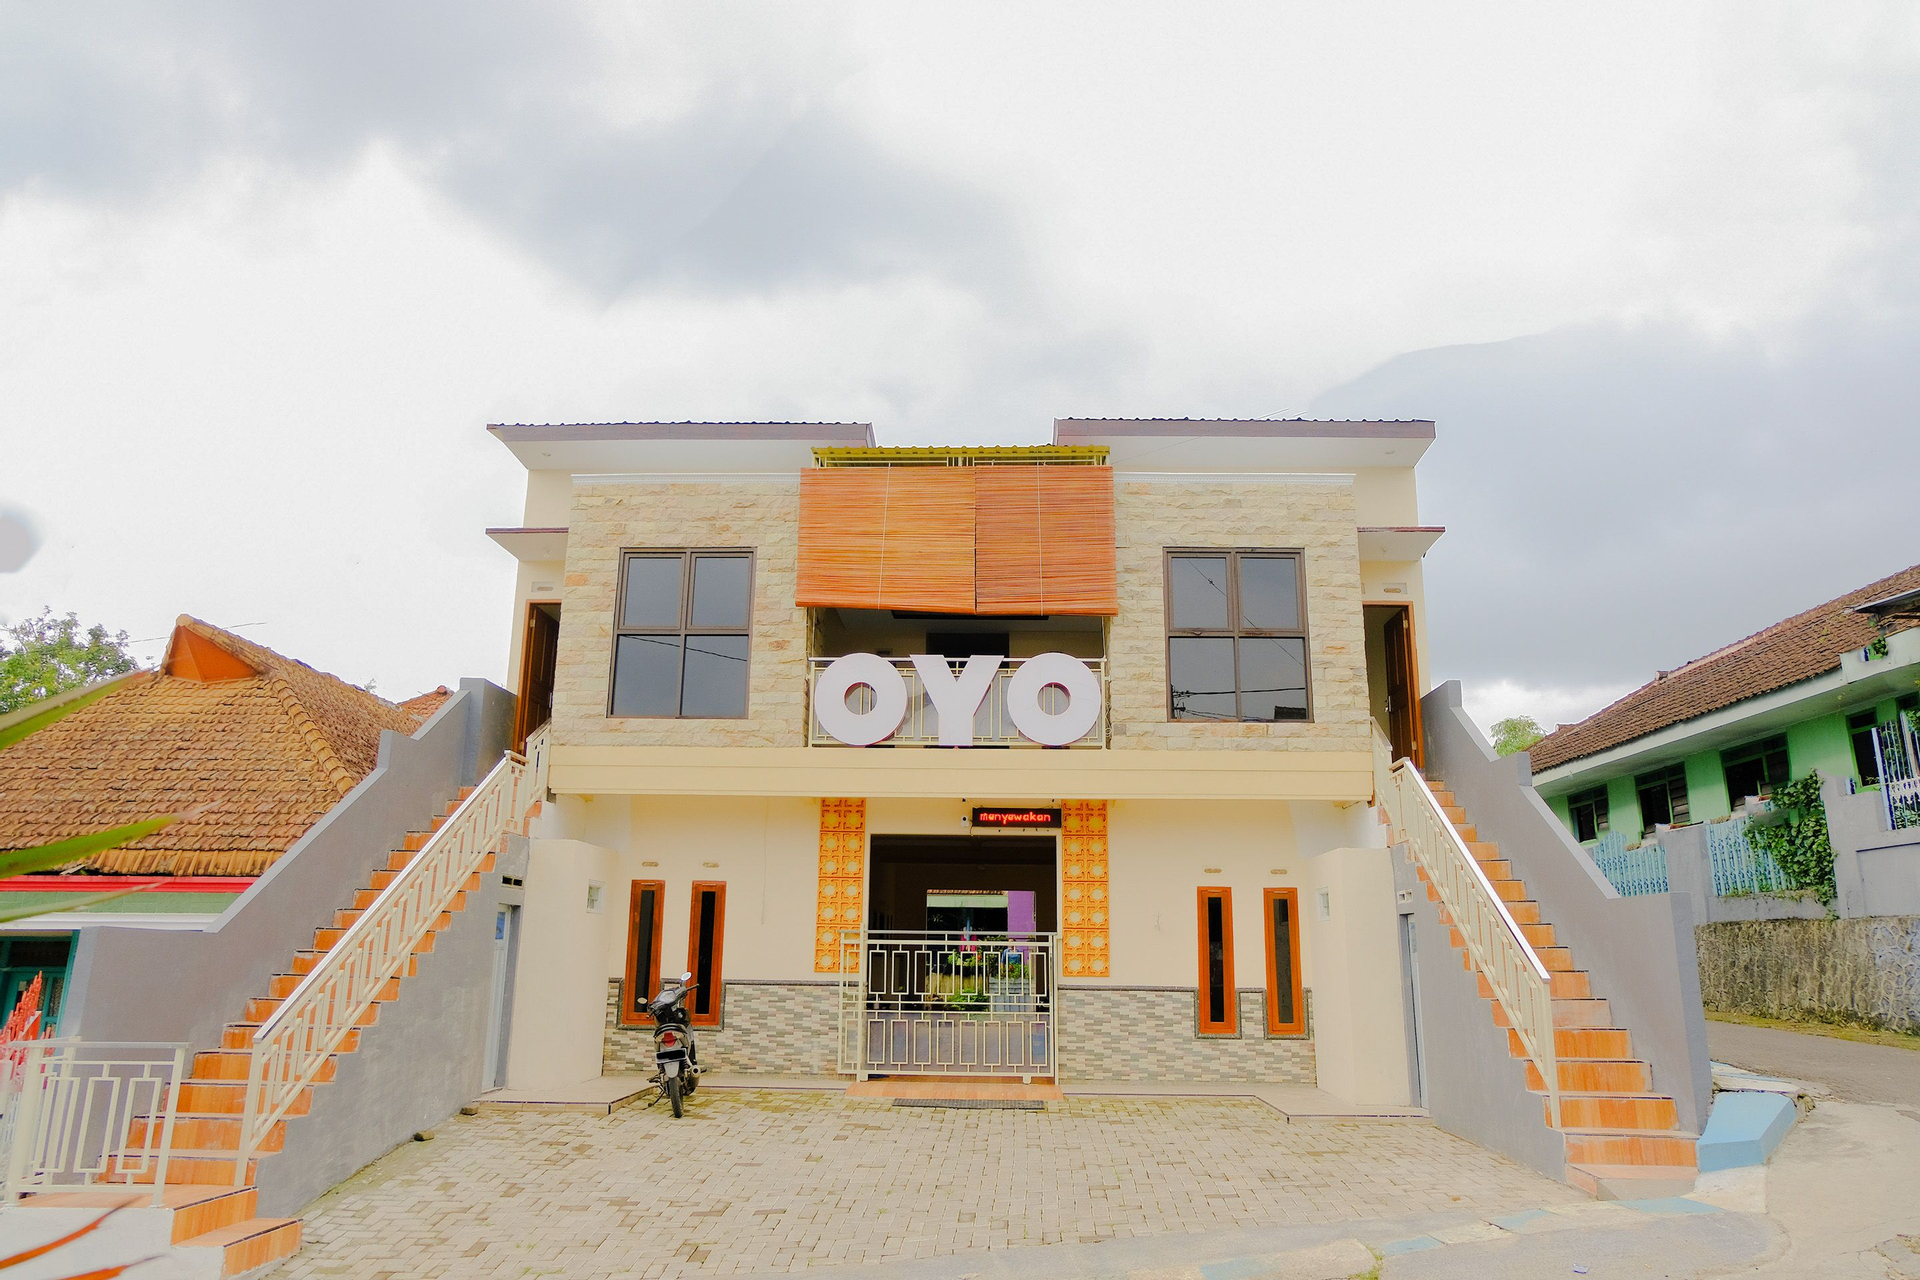 Exterior & Views 1, OYO 605 Queen Homestay, Malang